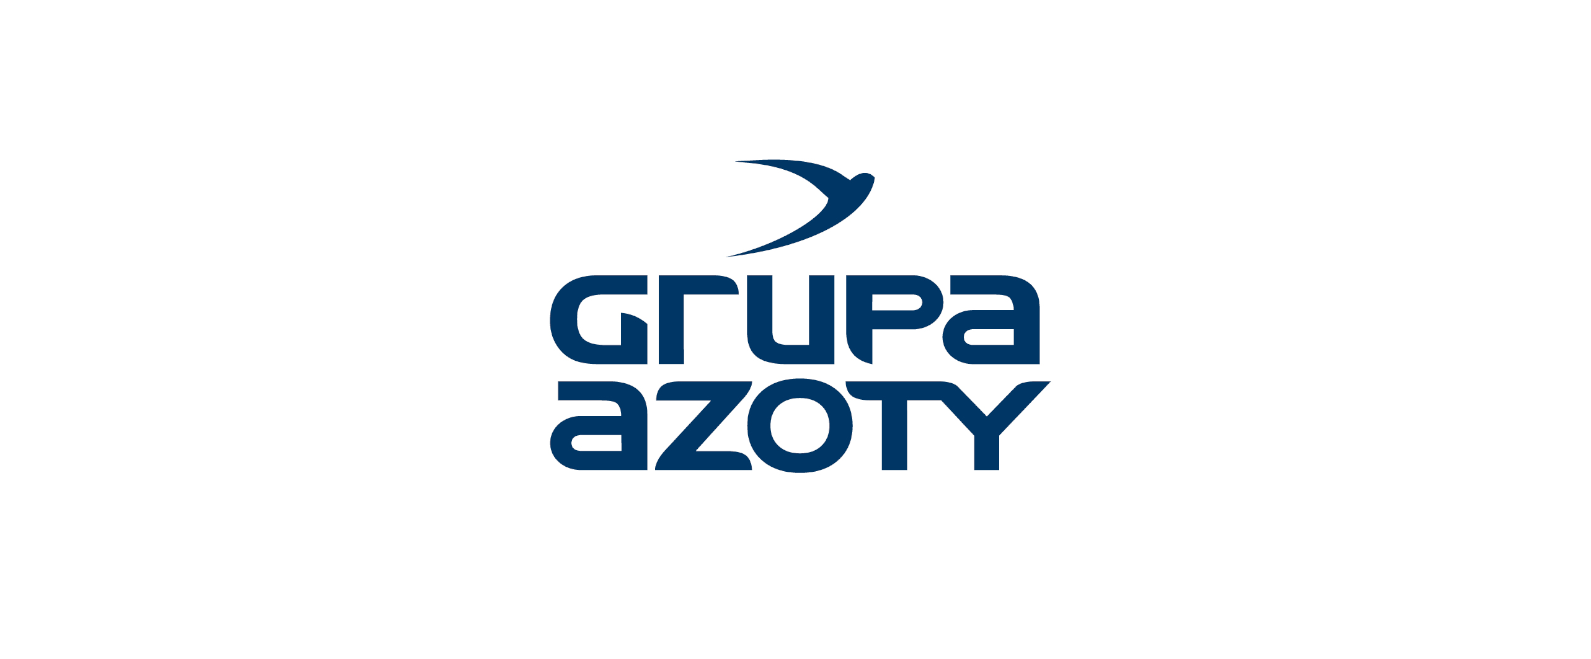 Grupa Azoty wystąpiła z wnioskiem o odstąpienie od stosowania wybranych warunków umów o finansowanie